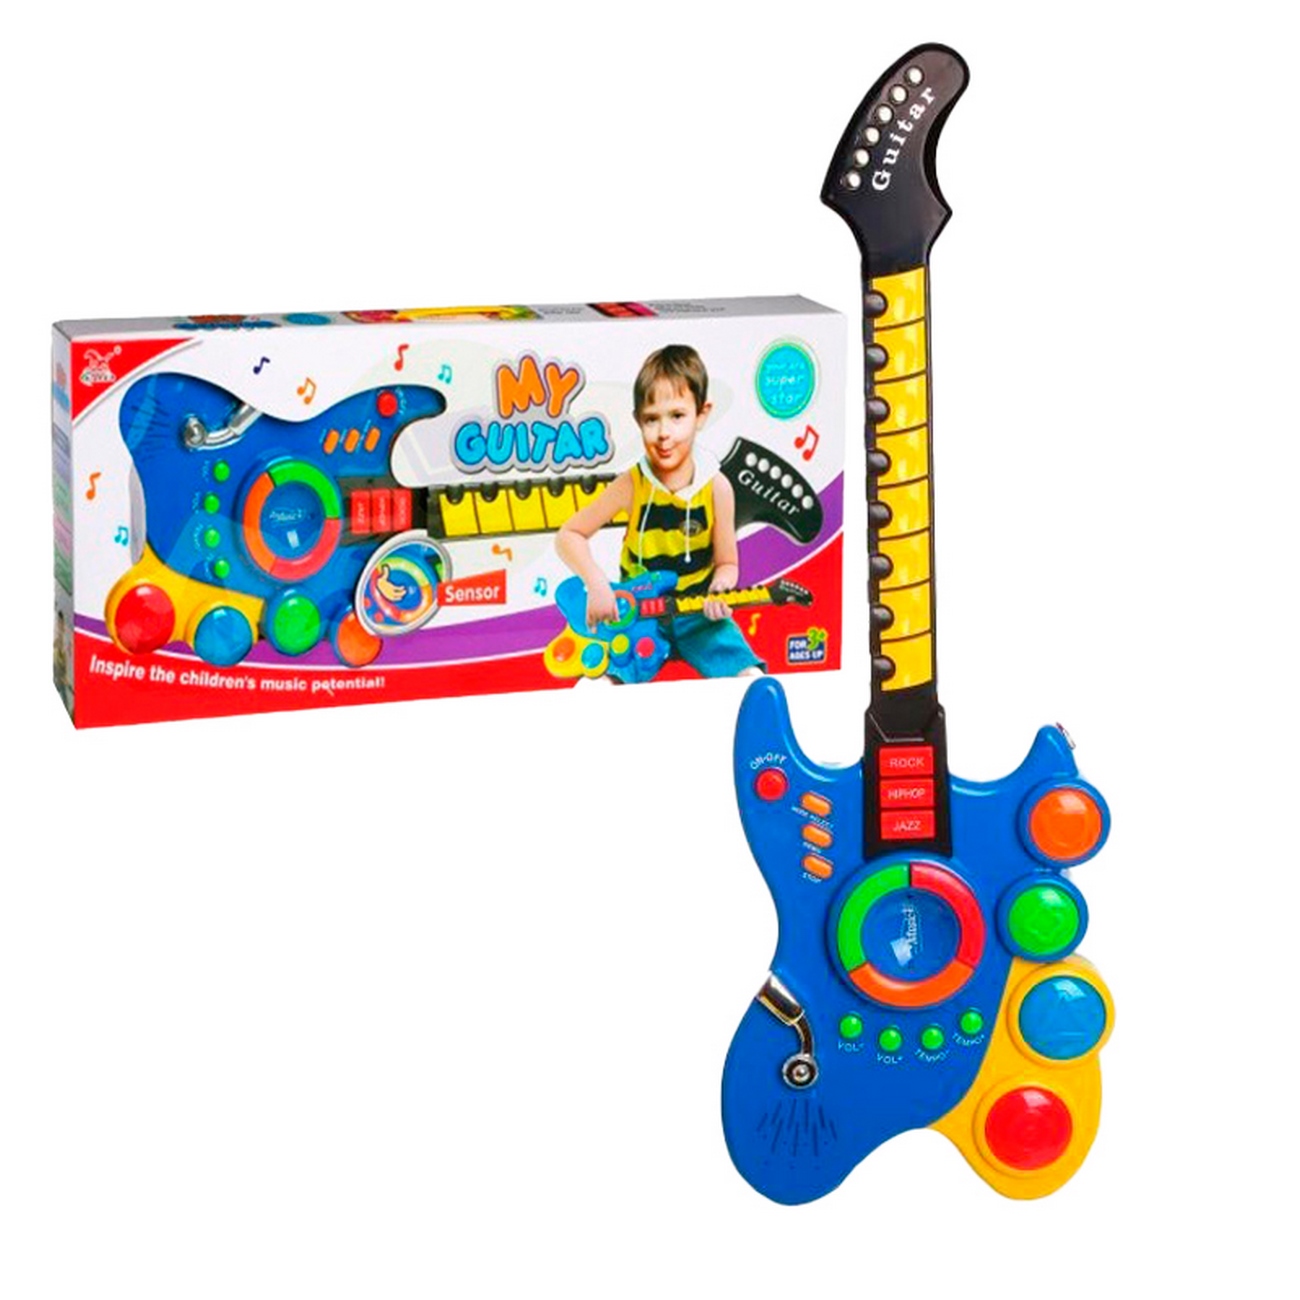 Guitarra Juguete Luces Y Sonido Niños Regalo + Baterias